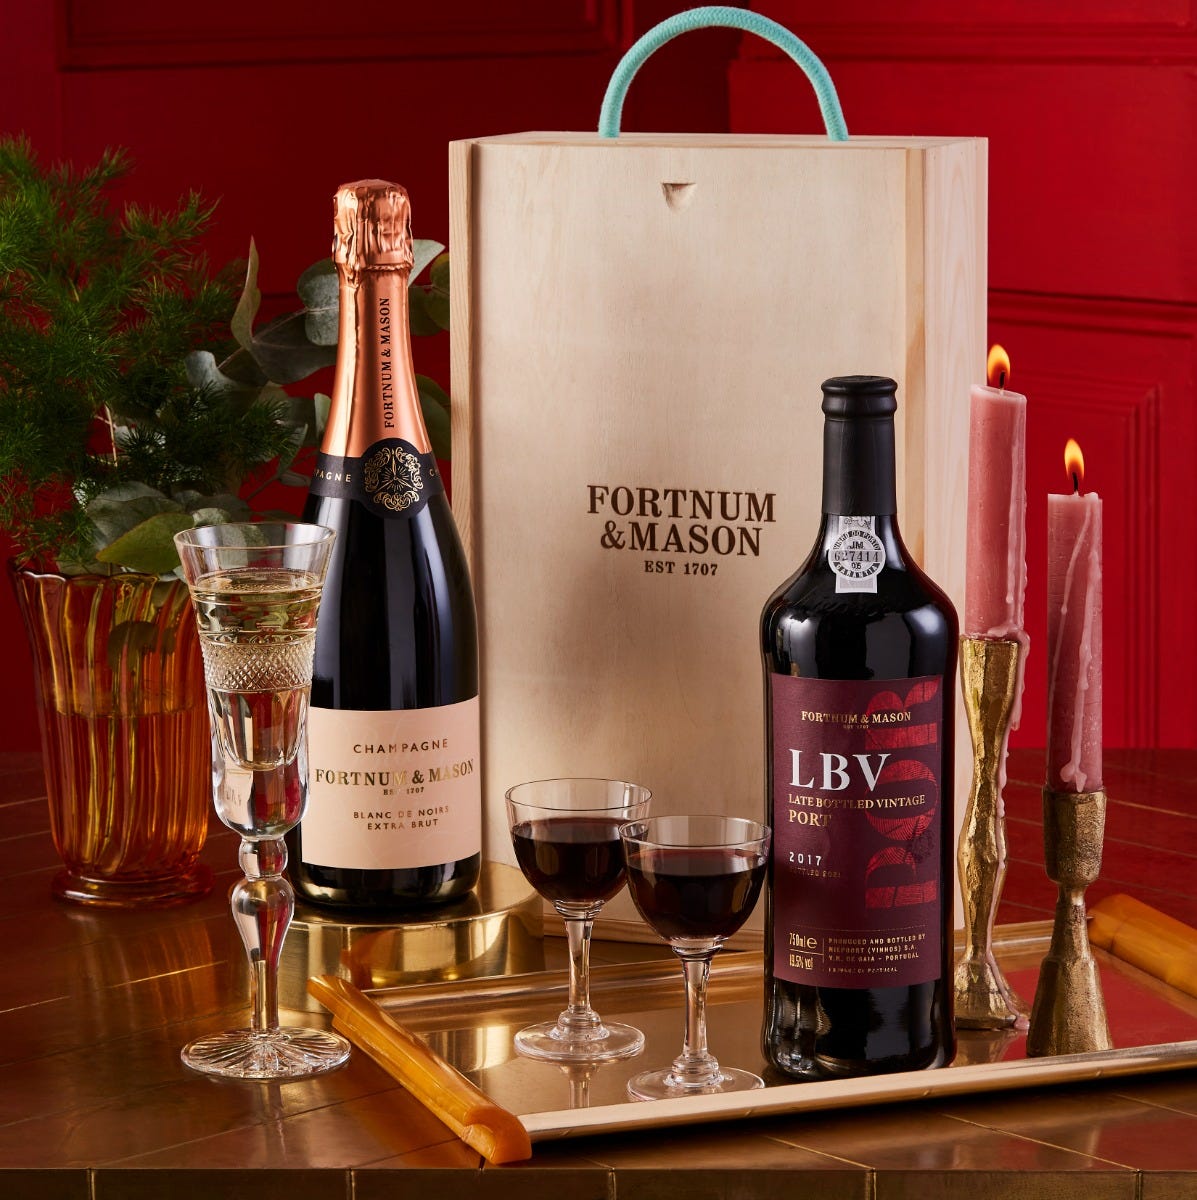 The Champagne & Port Gift Box, Fortnum & Mason